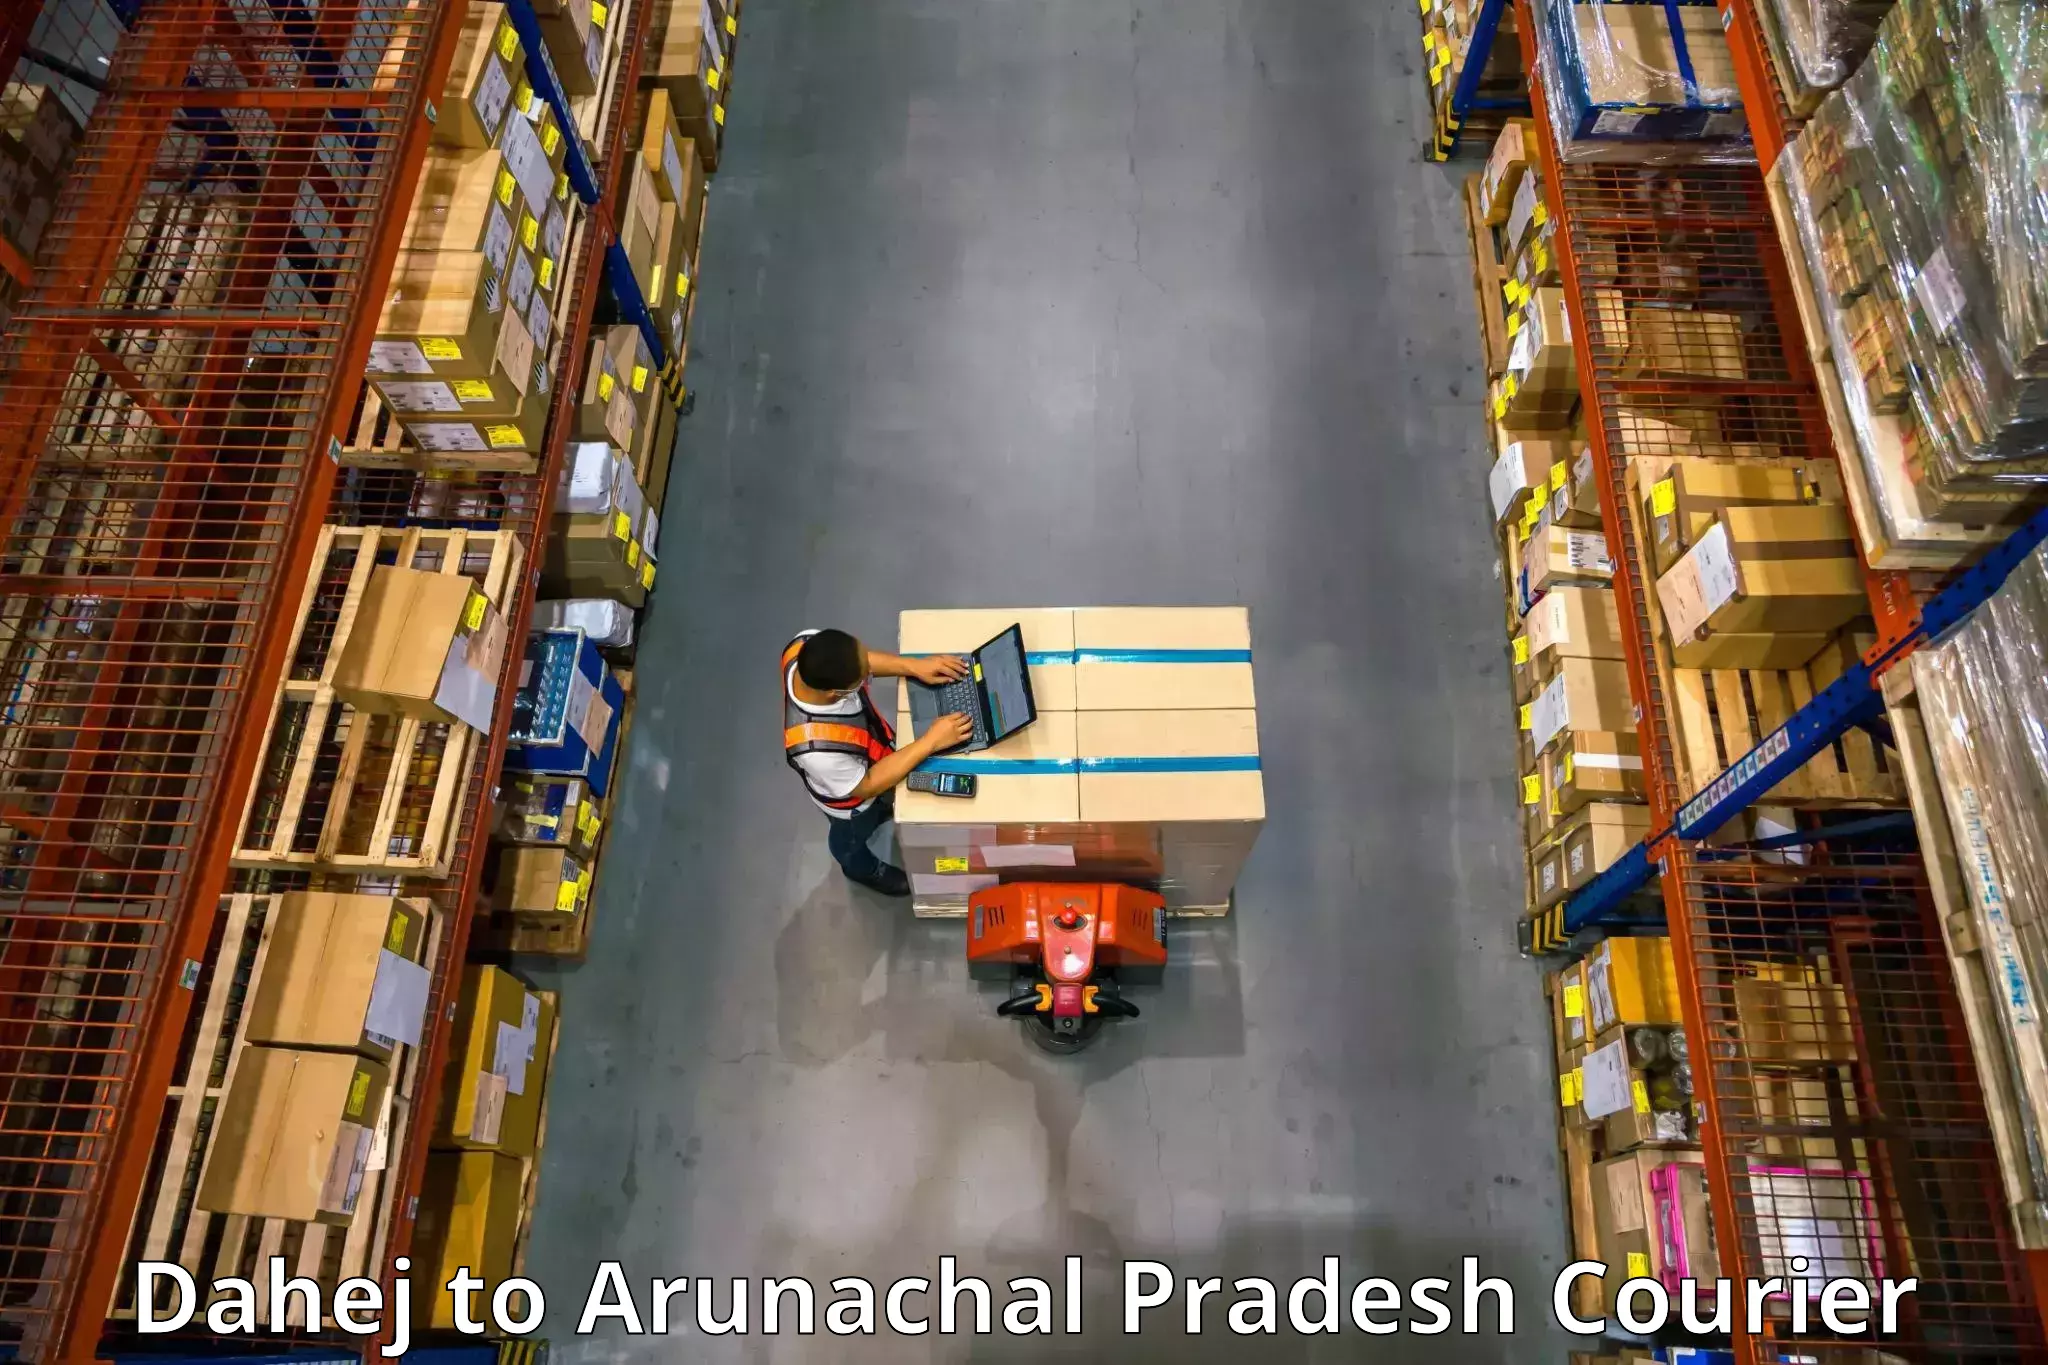 Quality moving company Dahej to Arunachal Pradesh